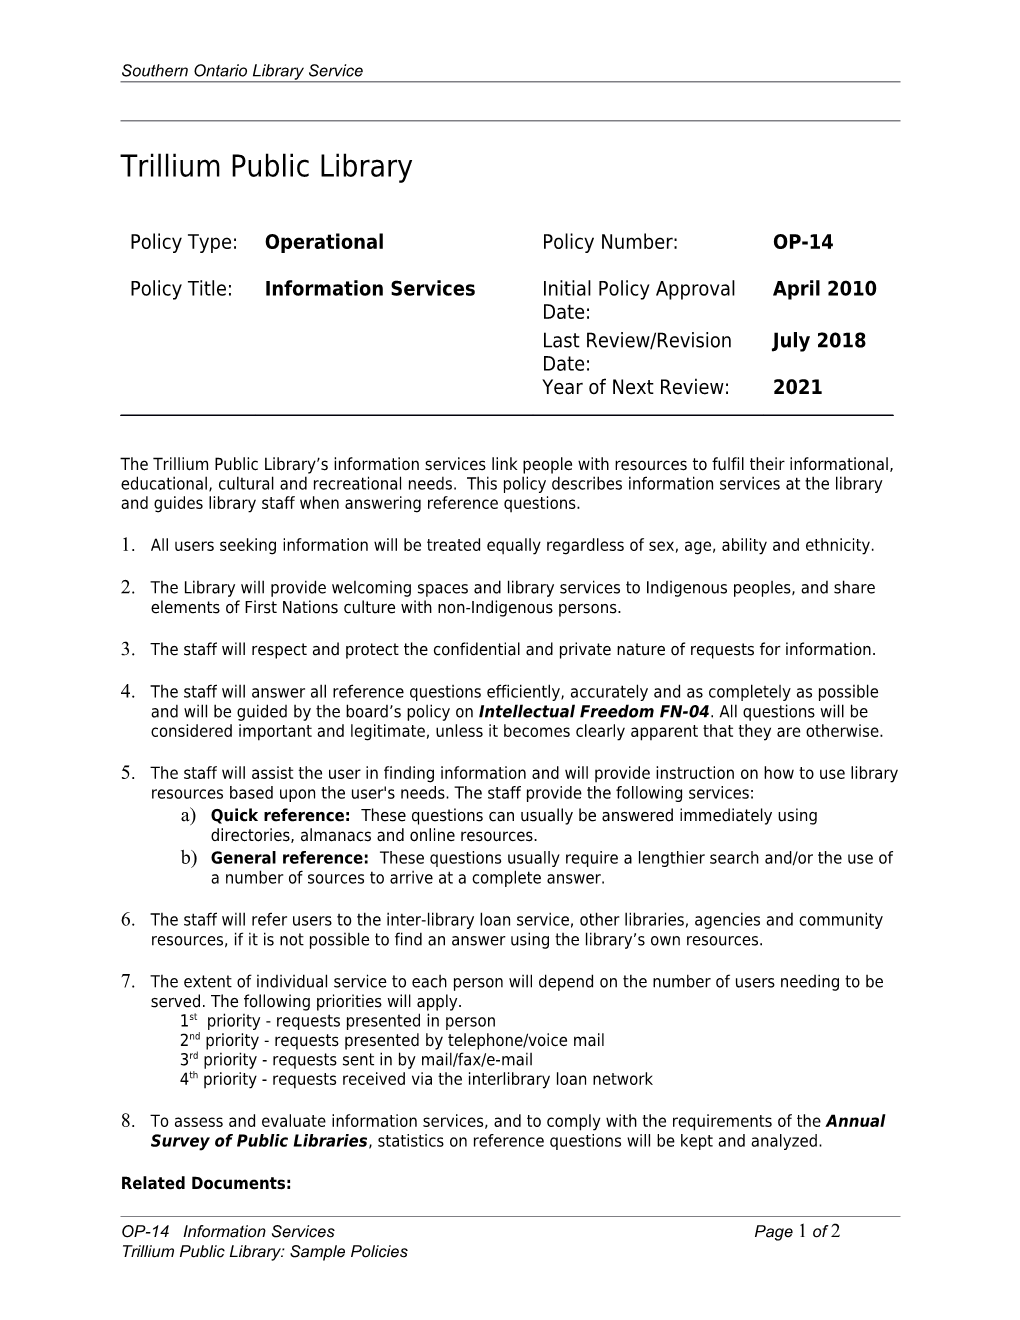 Trillium Public Library Sample Policies